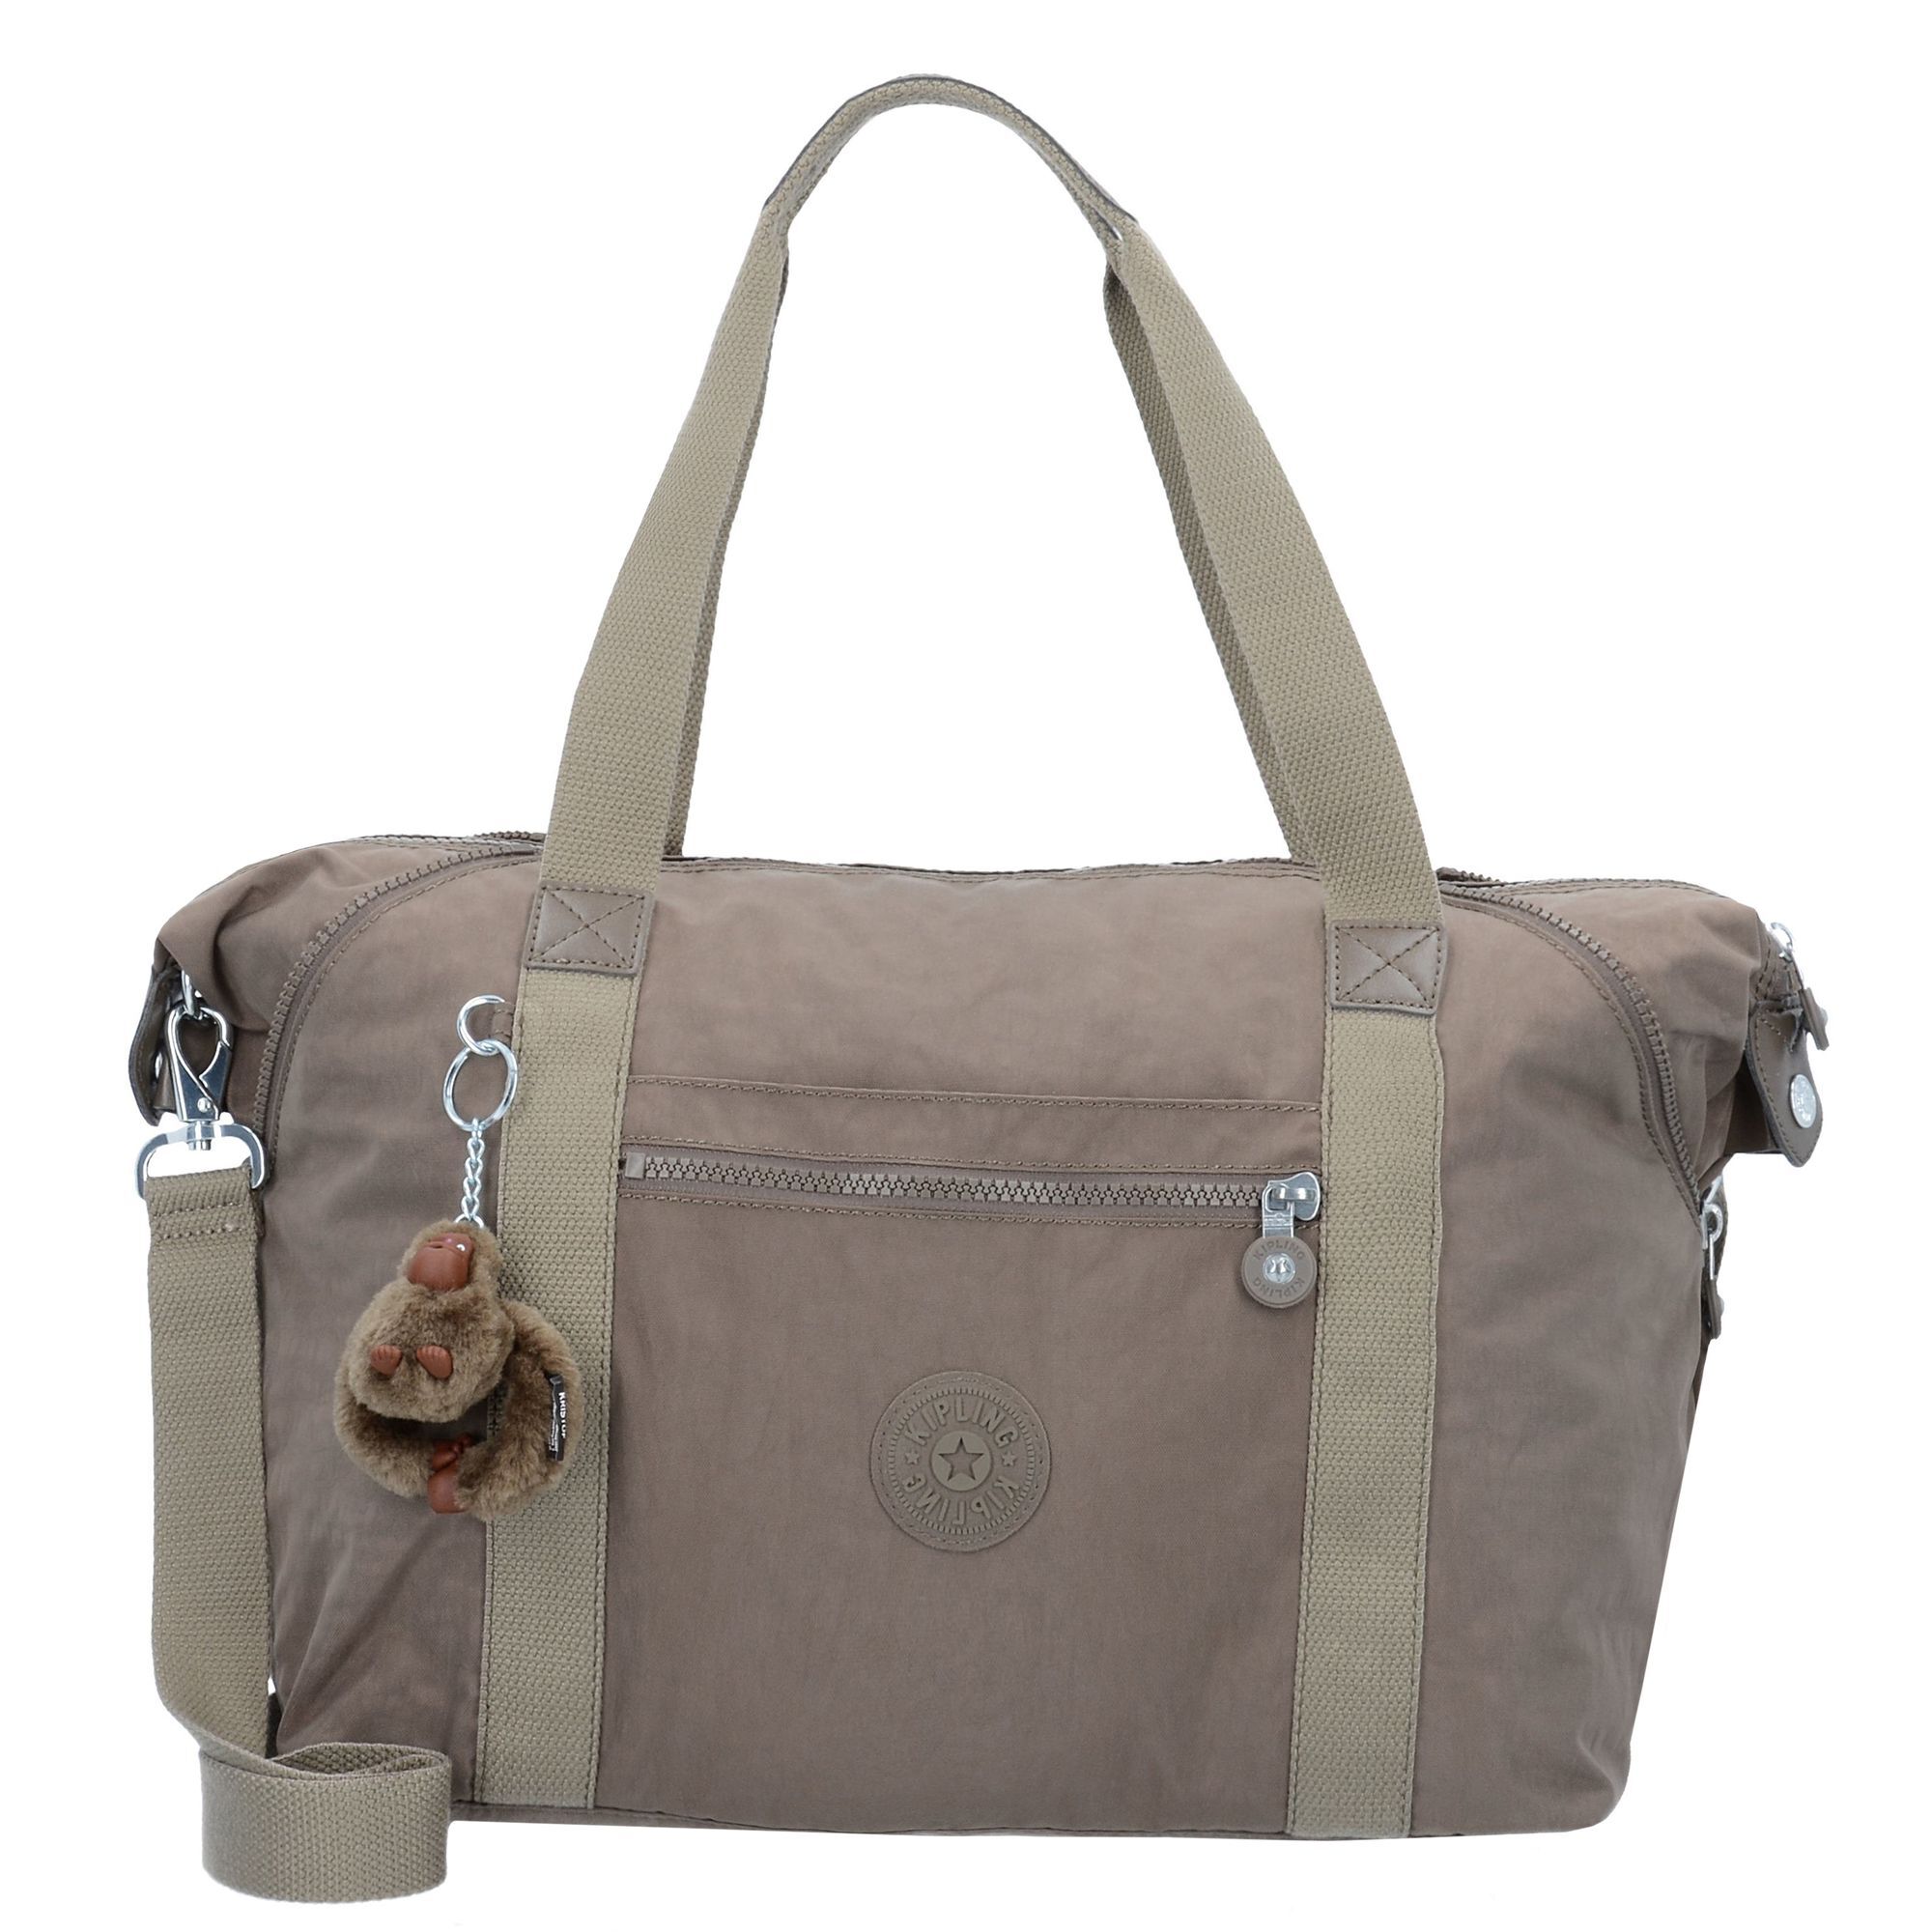 Сумка через плечо Kipling Classics Basic Art 35 cm, цвет true beige сумка k0132722x art mini basic handbag 22x true beige c